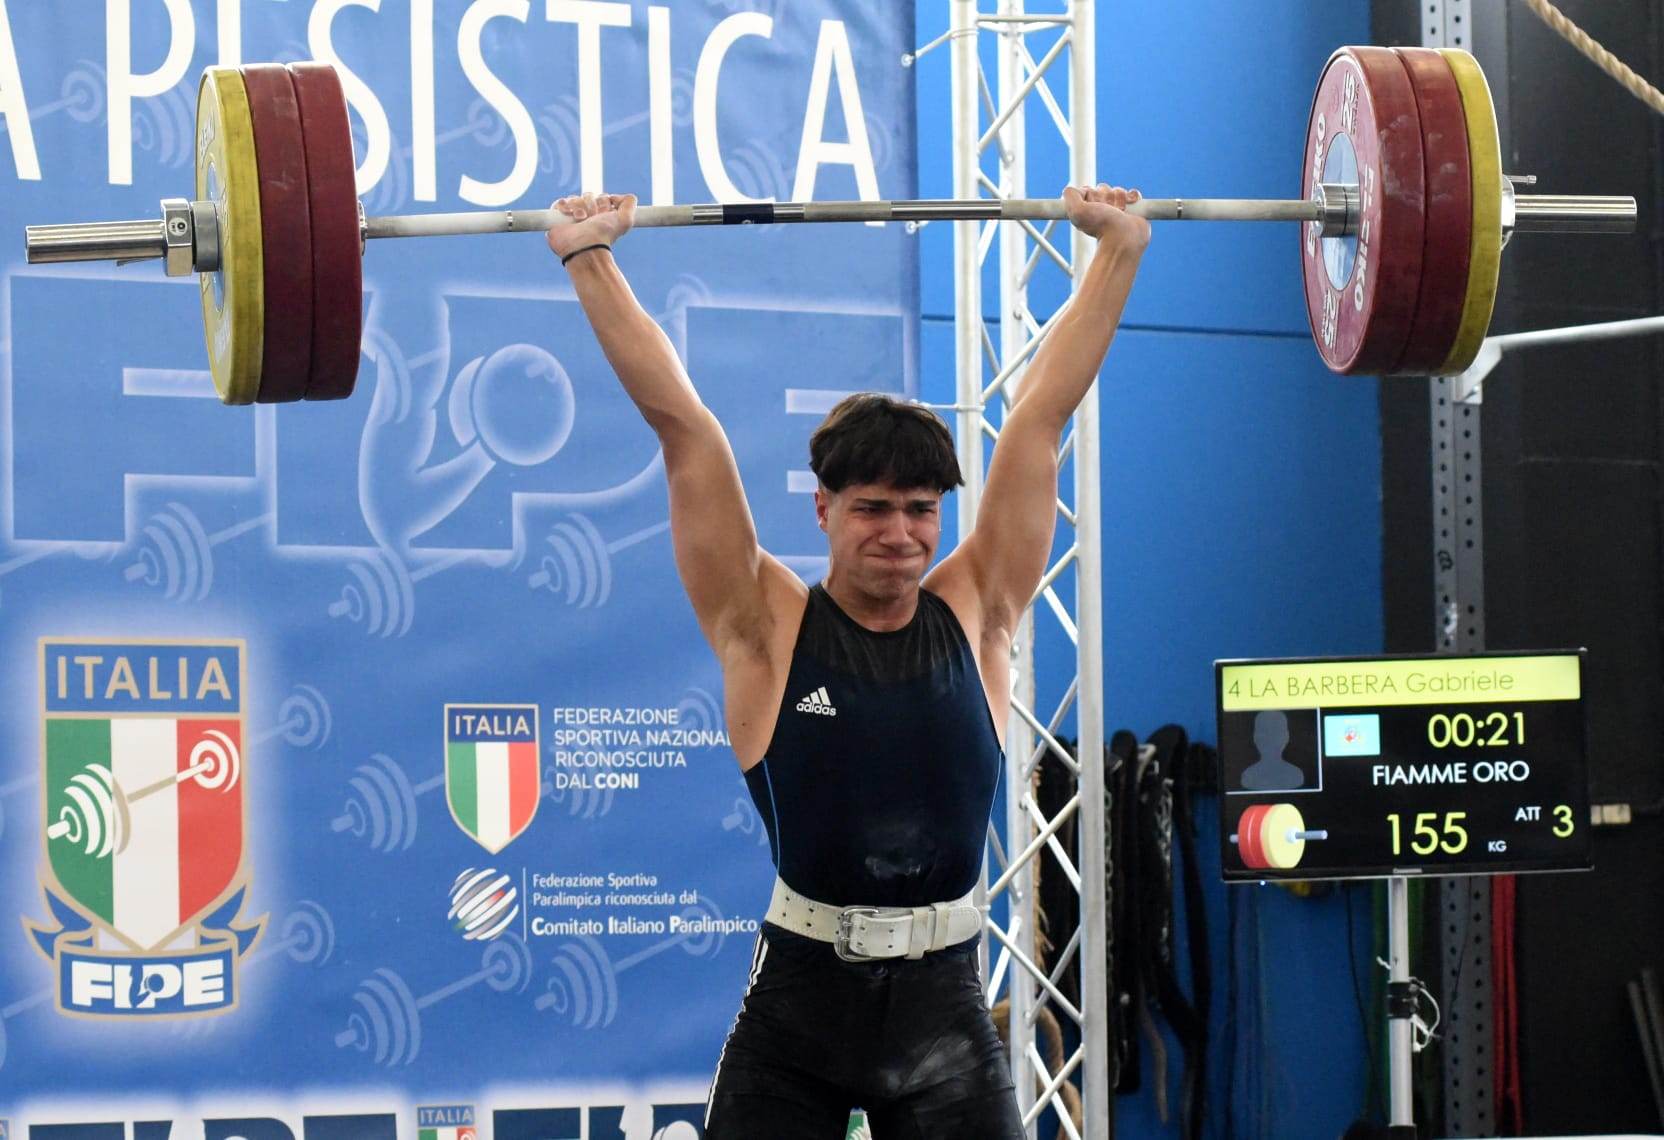 Pesistica. Gabriele La Barbera (Fiamme Oro Caltanissetta) convocato ai campionati mondiali Youth di Durazzo